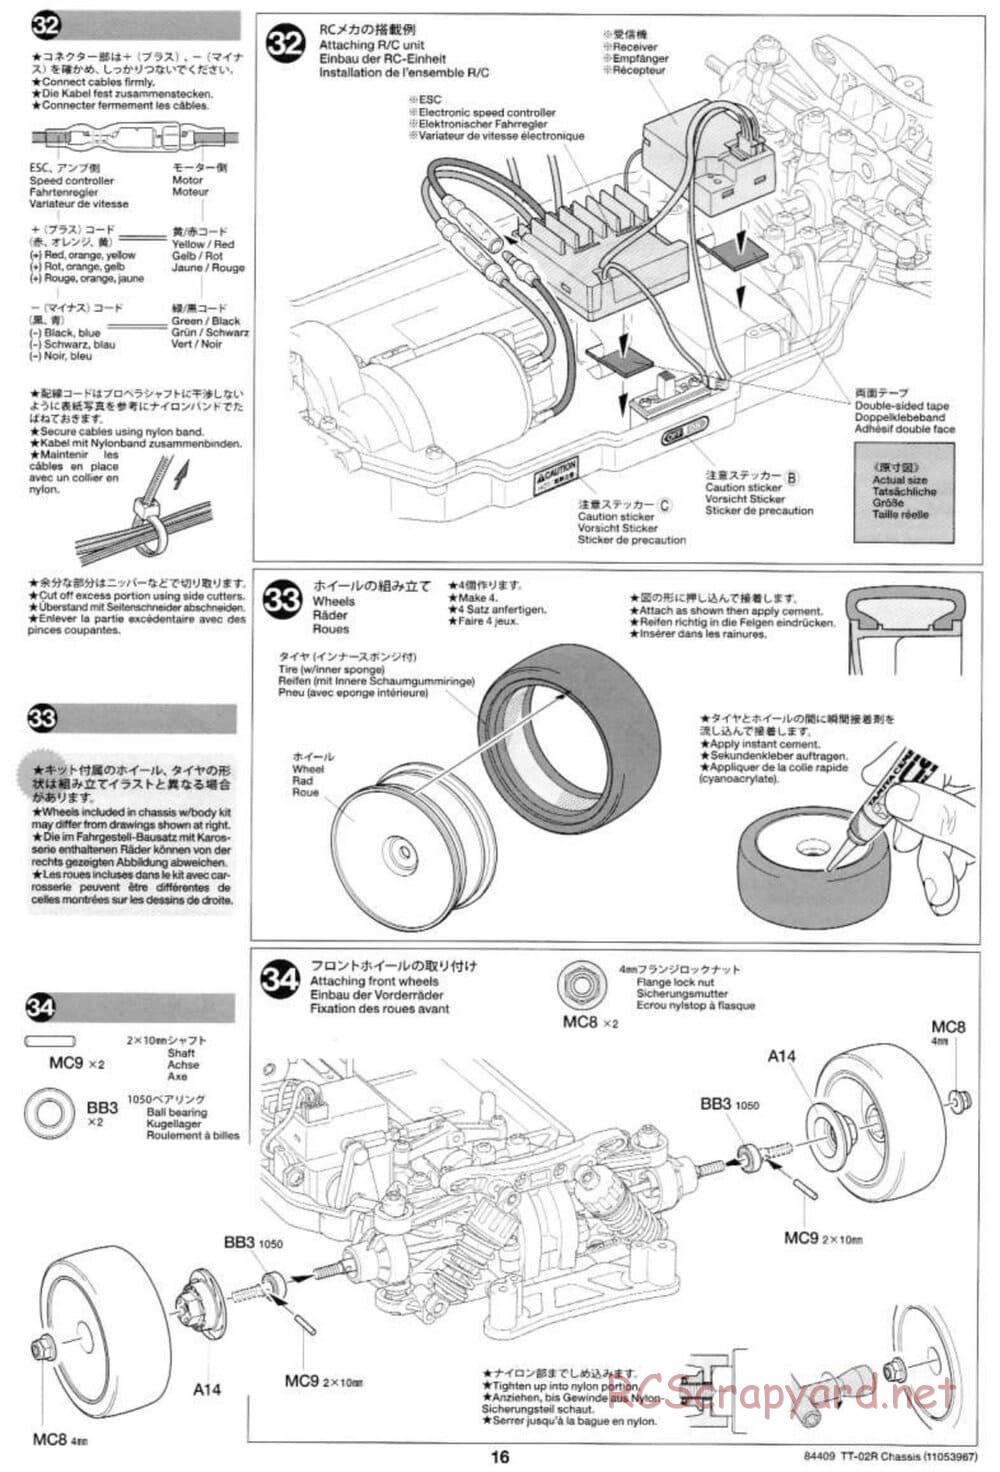 Tamiya - TT-02R Chassis - Manual - Page 16